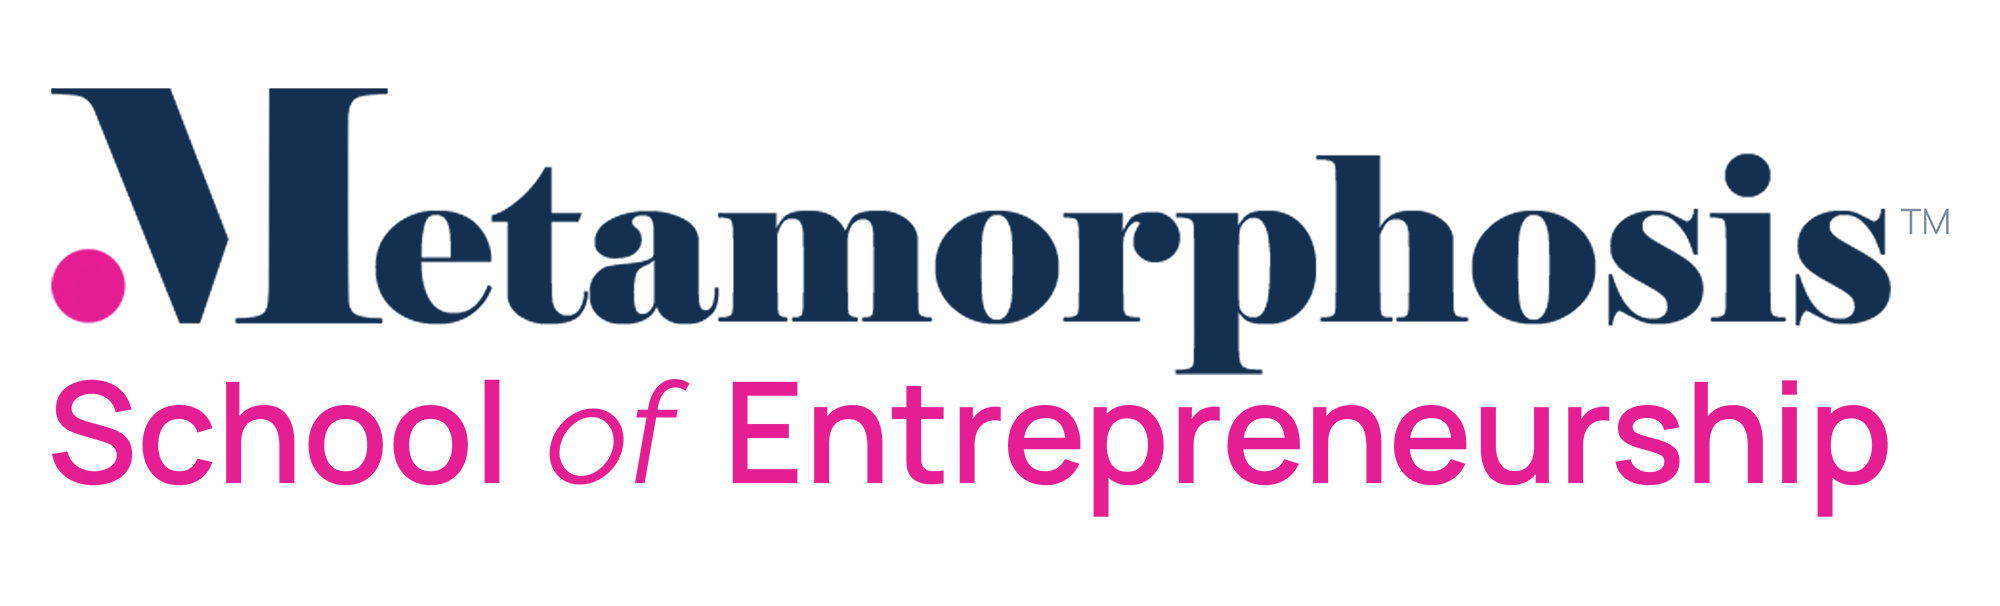 best-online-entrepreneurship-courses_logo